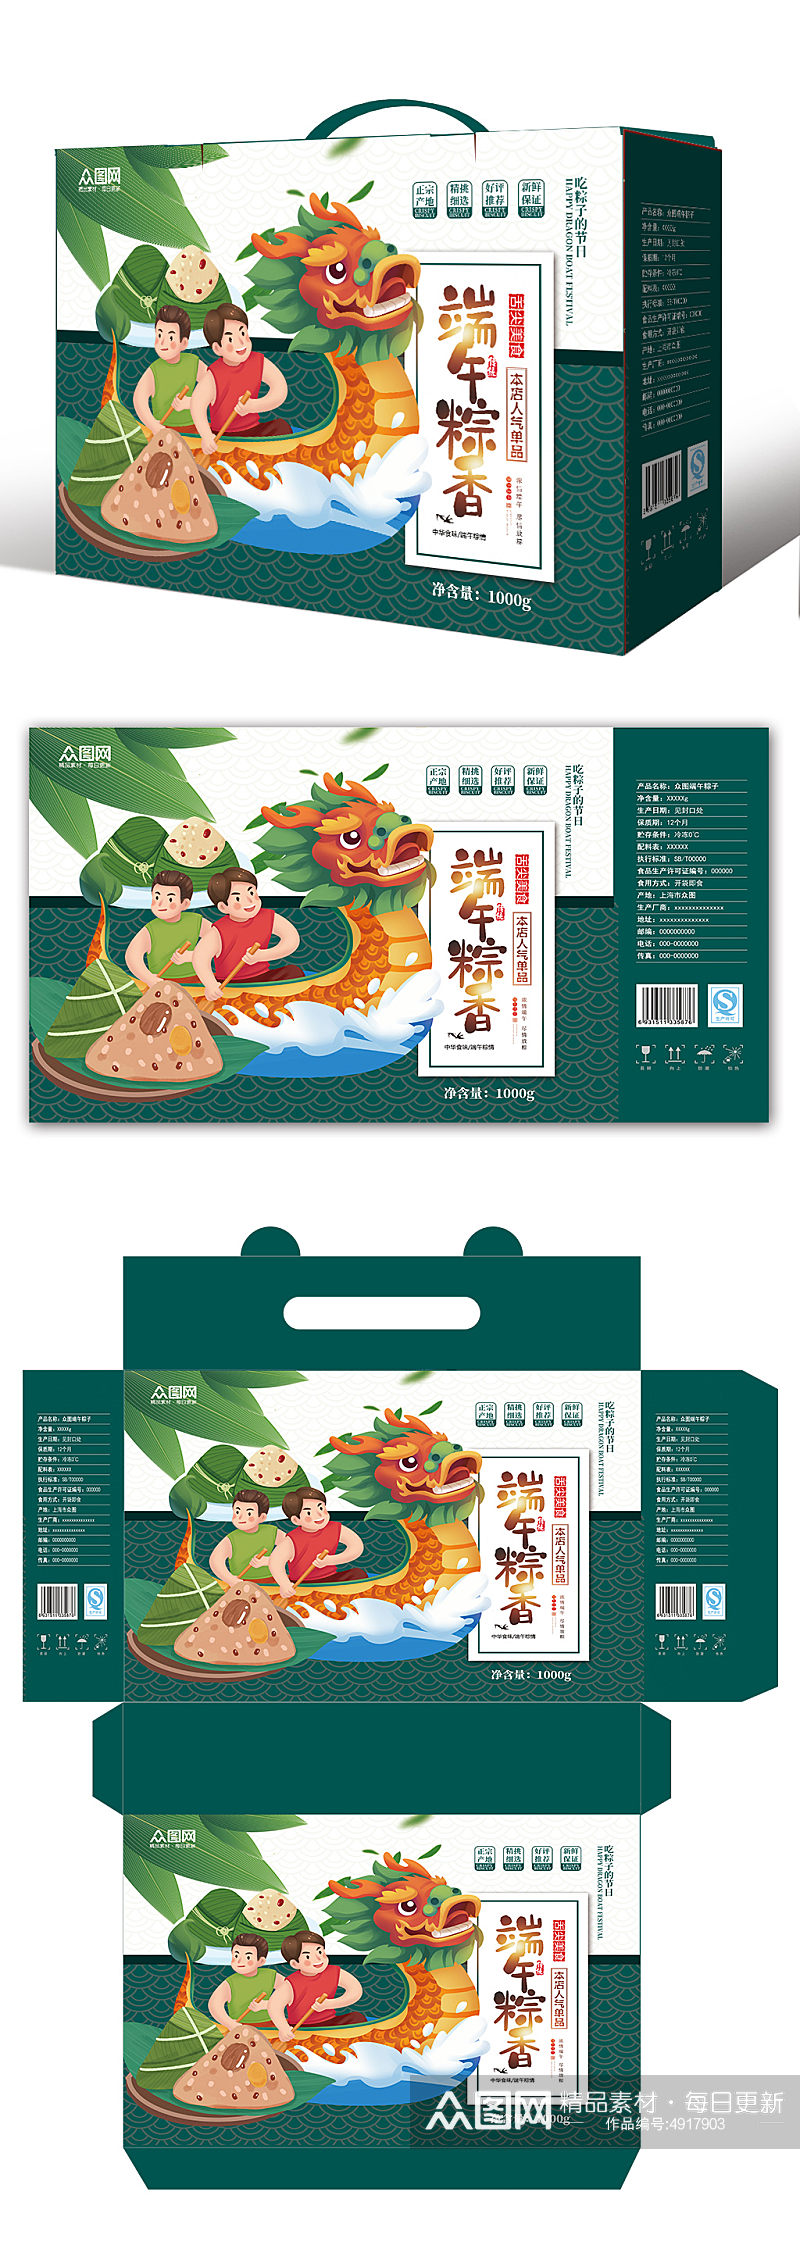 时尚大气端午节美食粽子包装礼盒设计素材